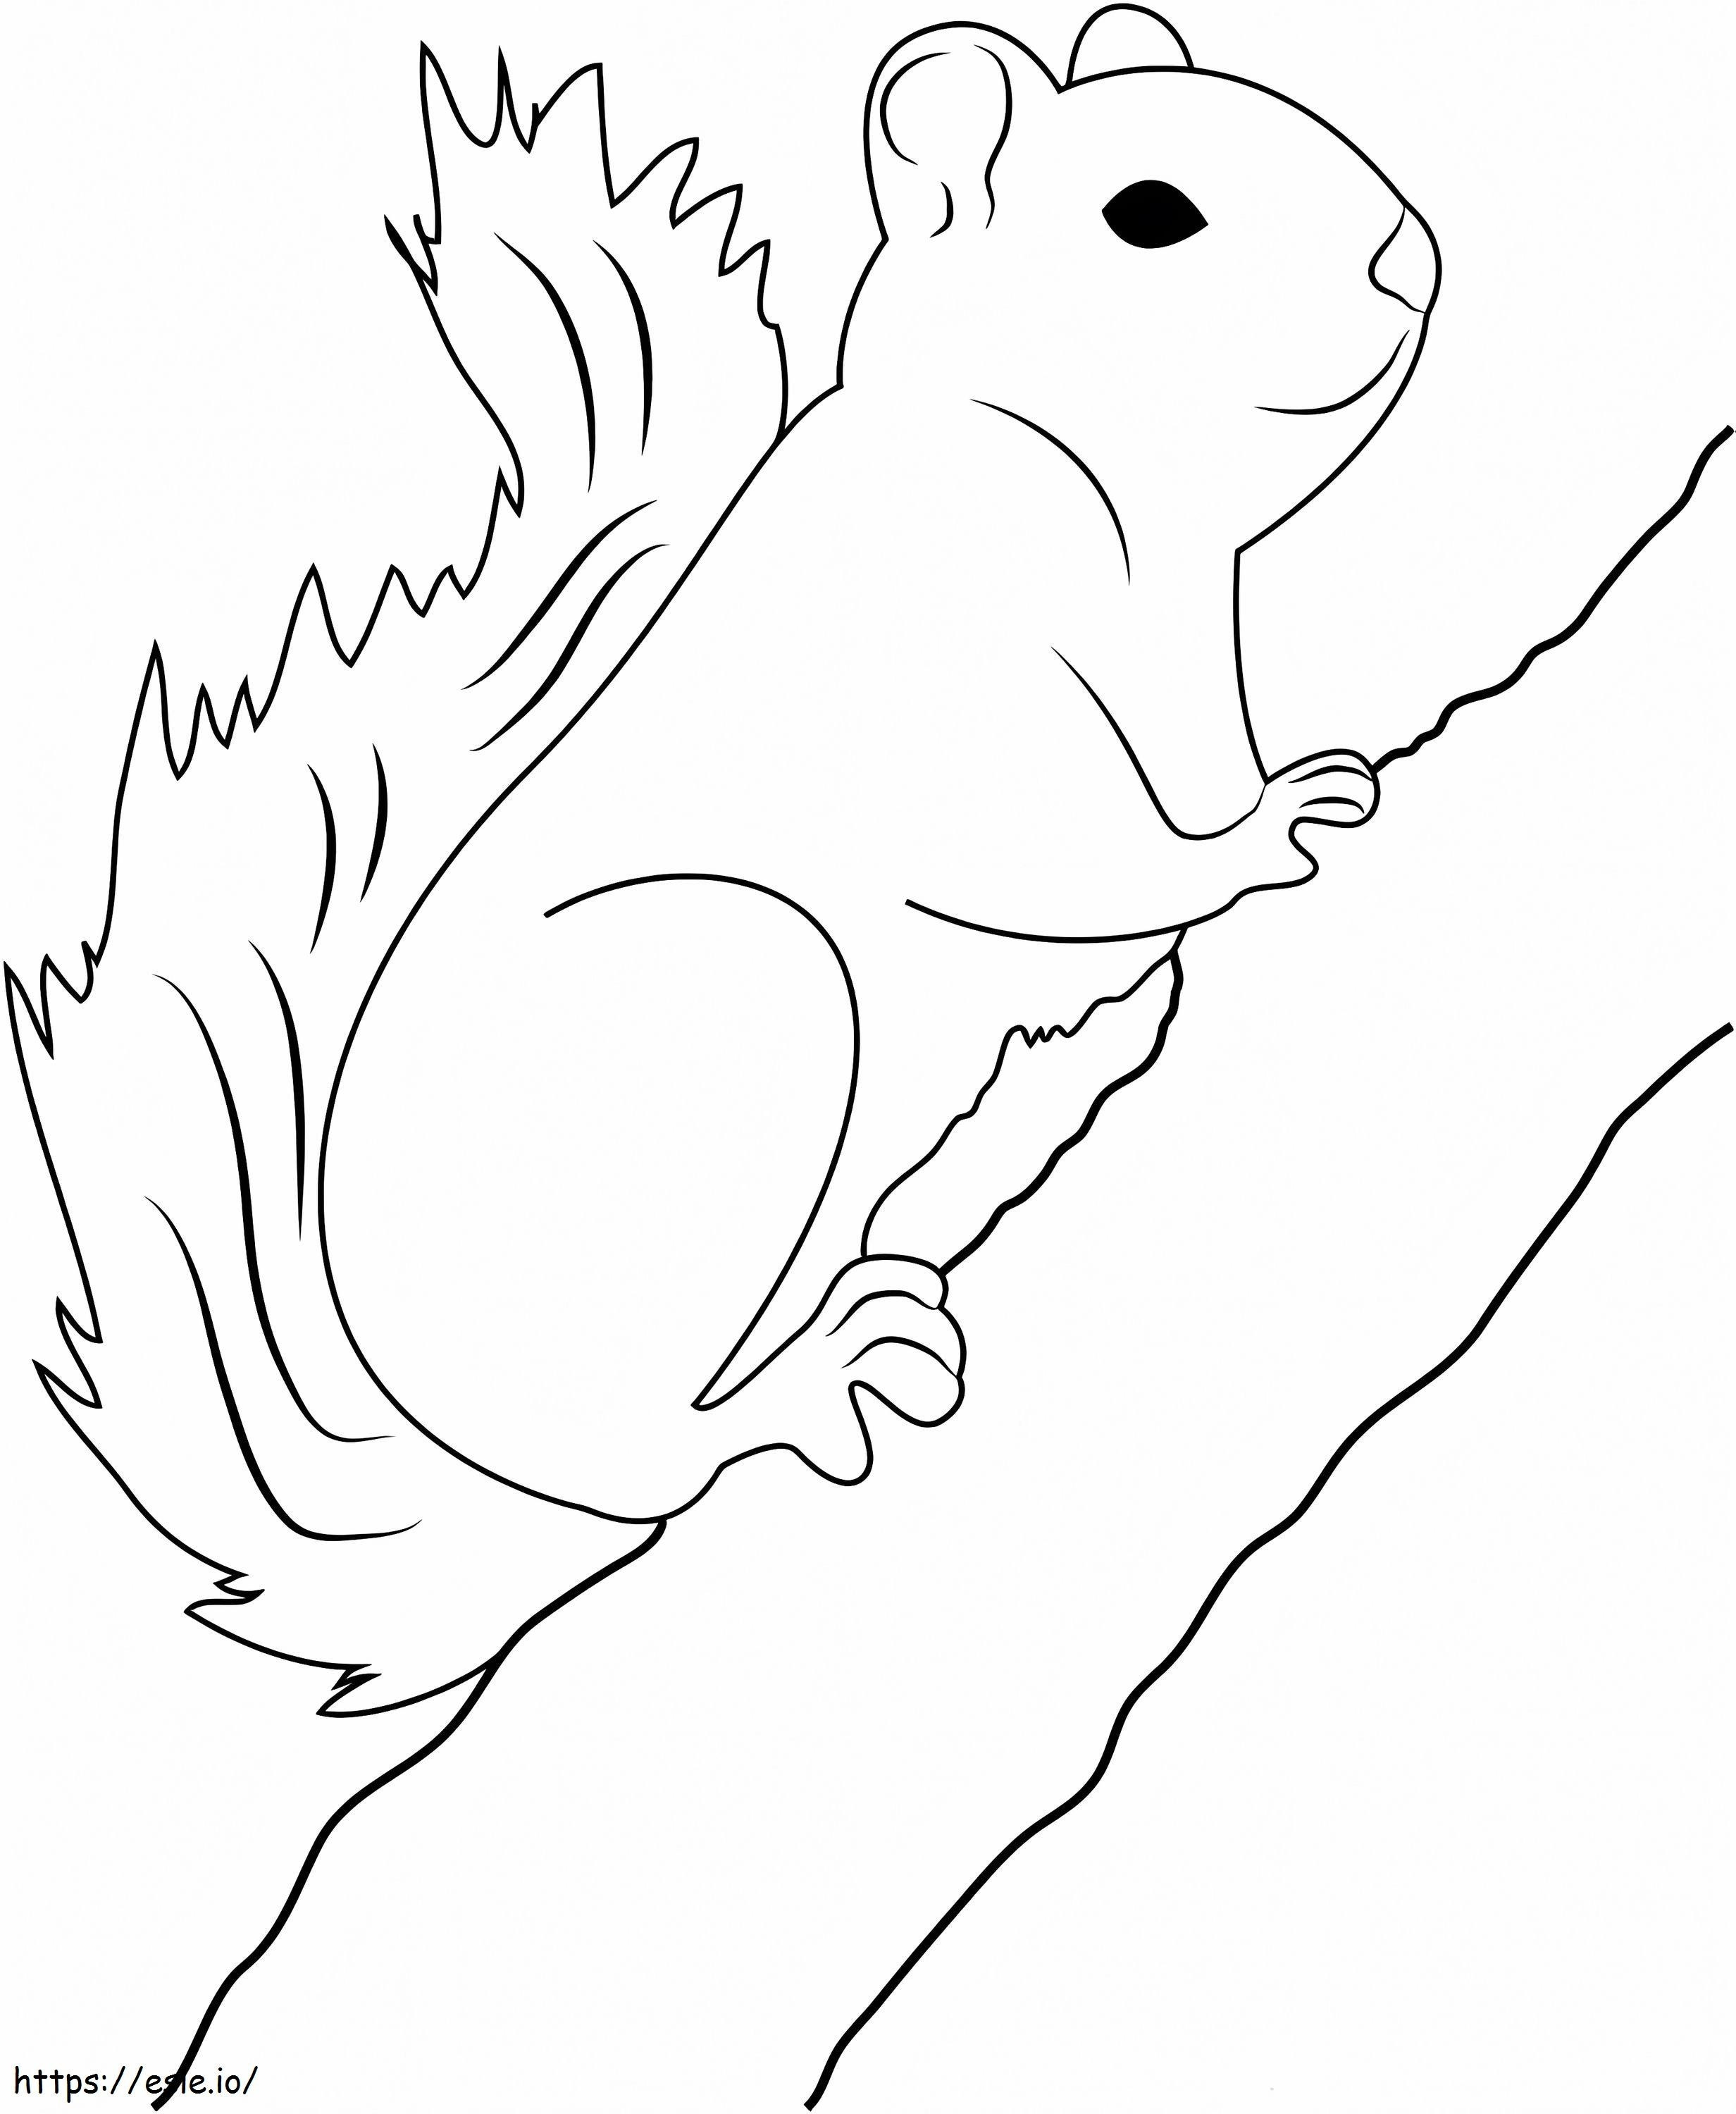 Ramo di albero rampicante dello scoiattolo da colorare